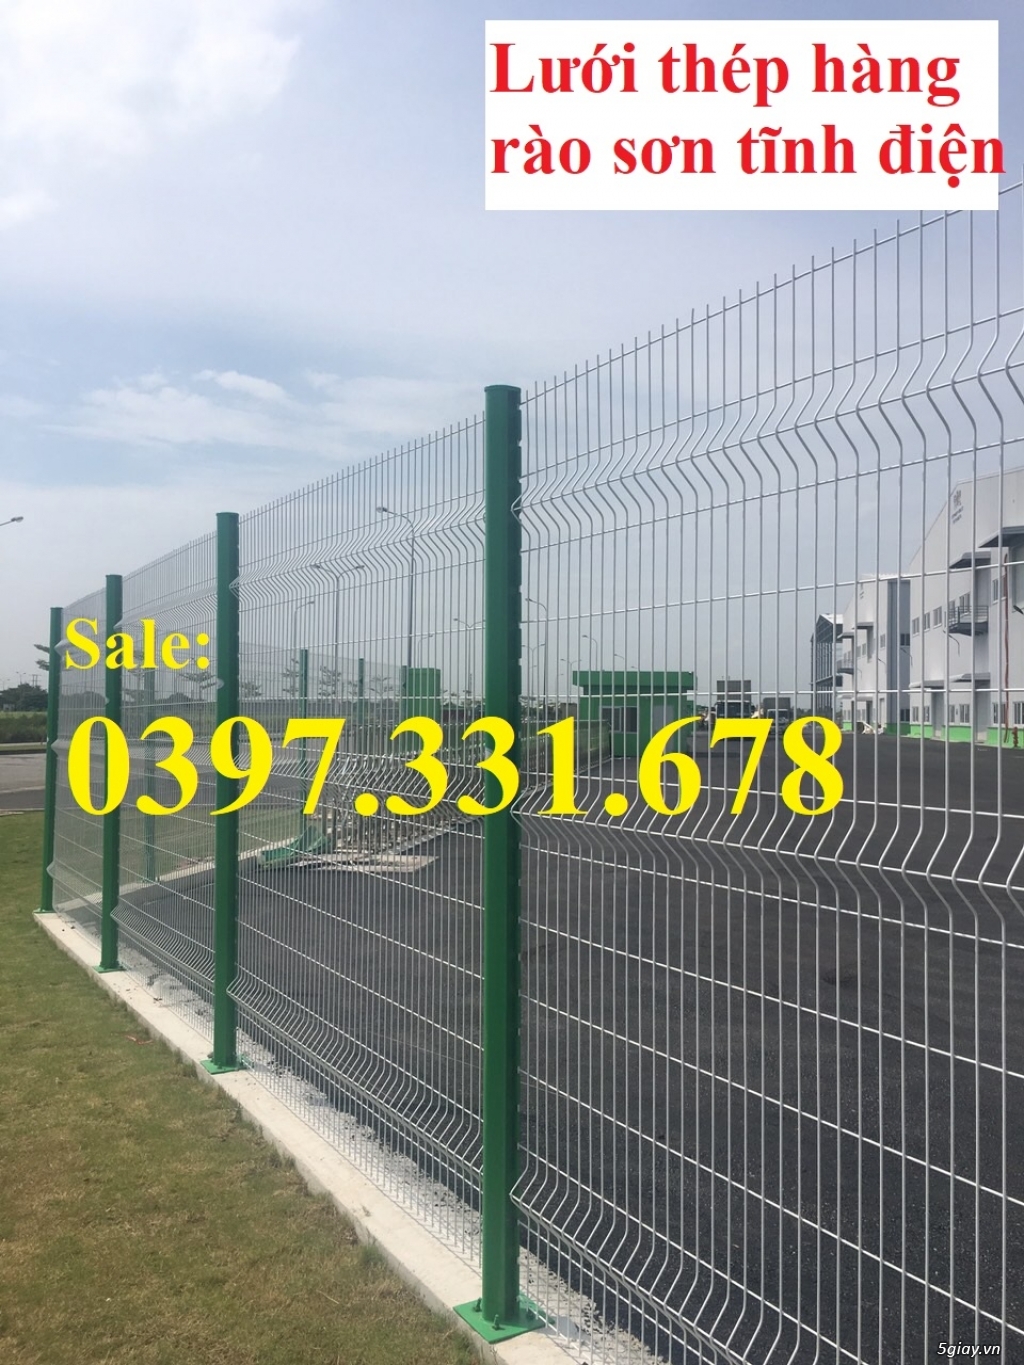 Chuyên sản xuất và lắp đặt hàng rào lưới thép 4ly, 5ly, 6ly tại Hà Nội - 4